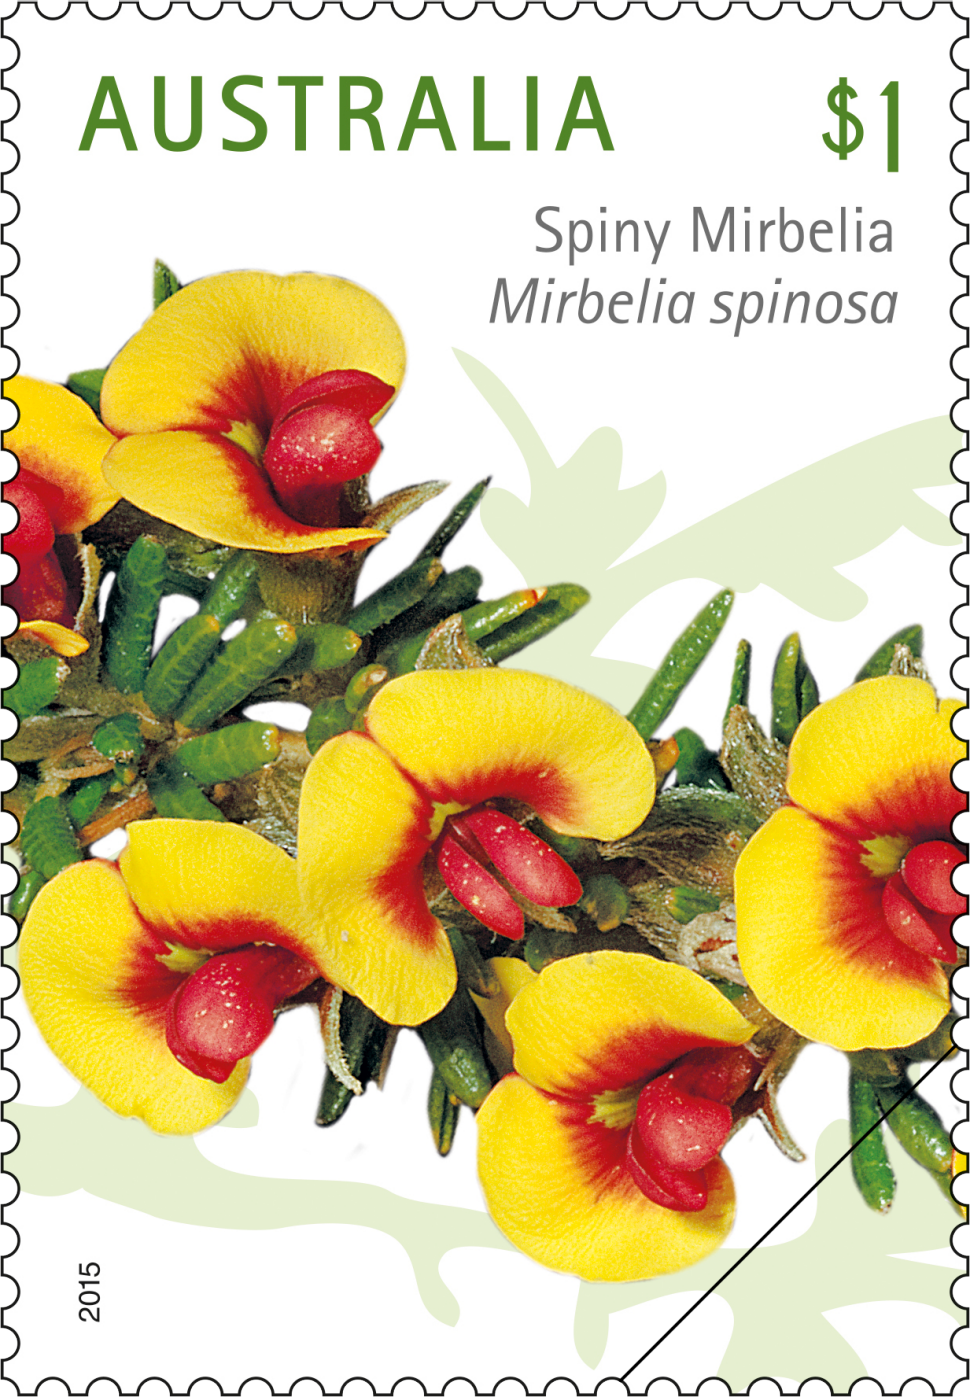 $1 - Spiny Mirbelia, Mirbelia spinosa